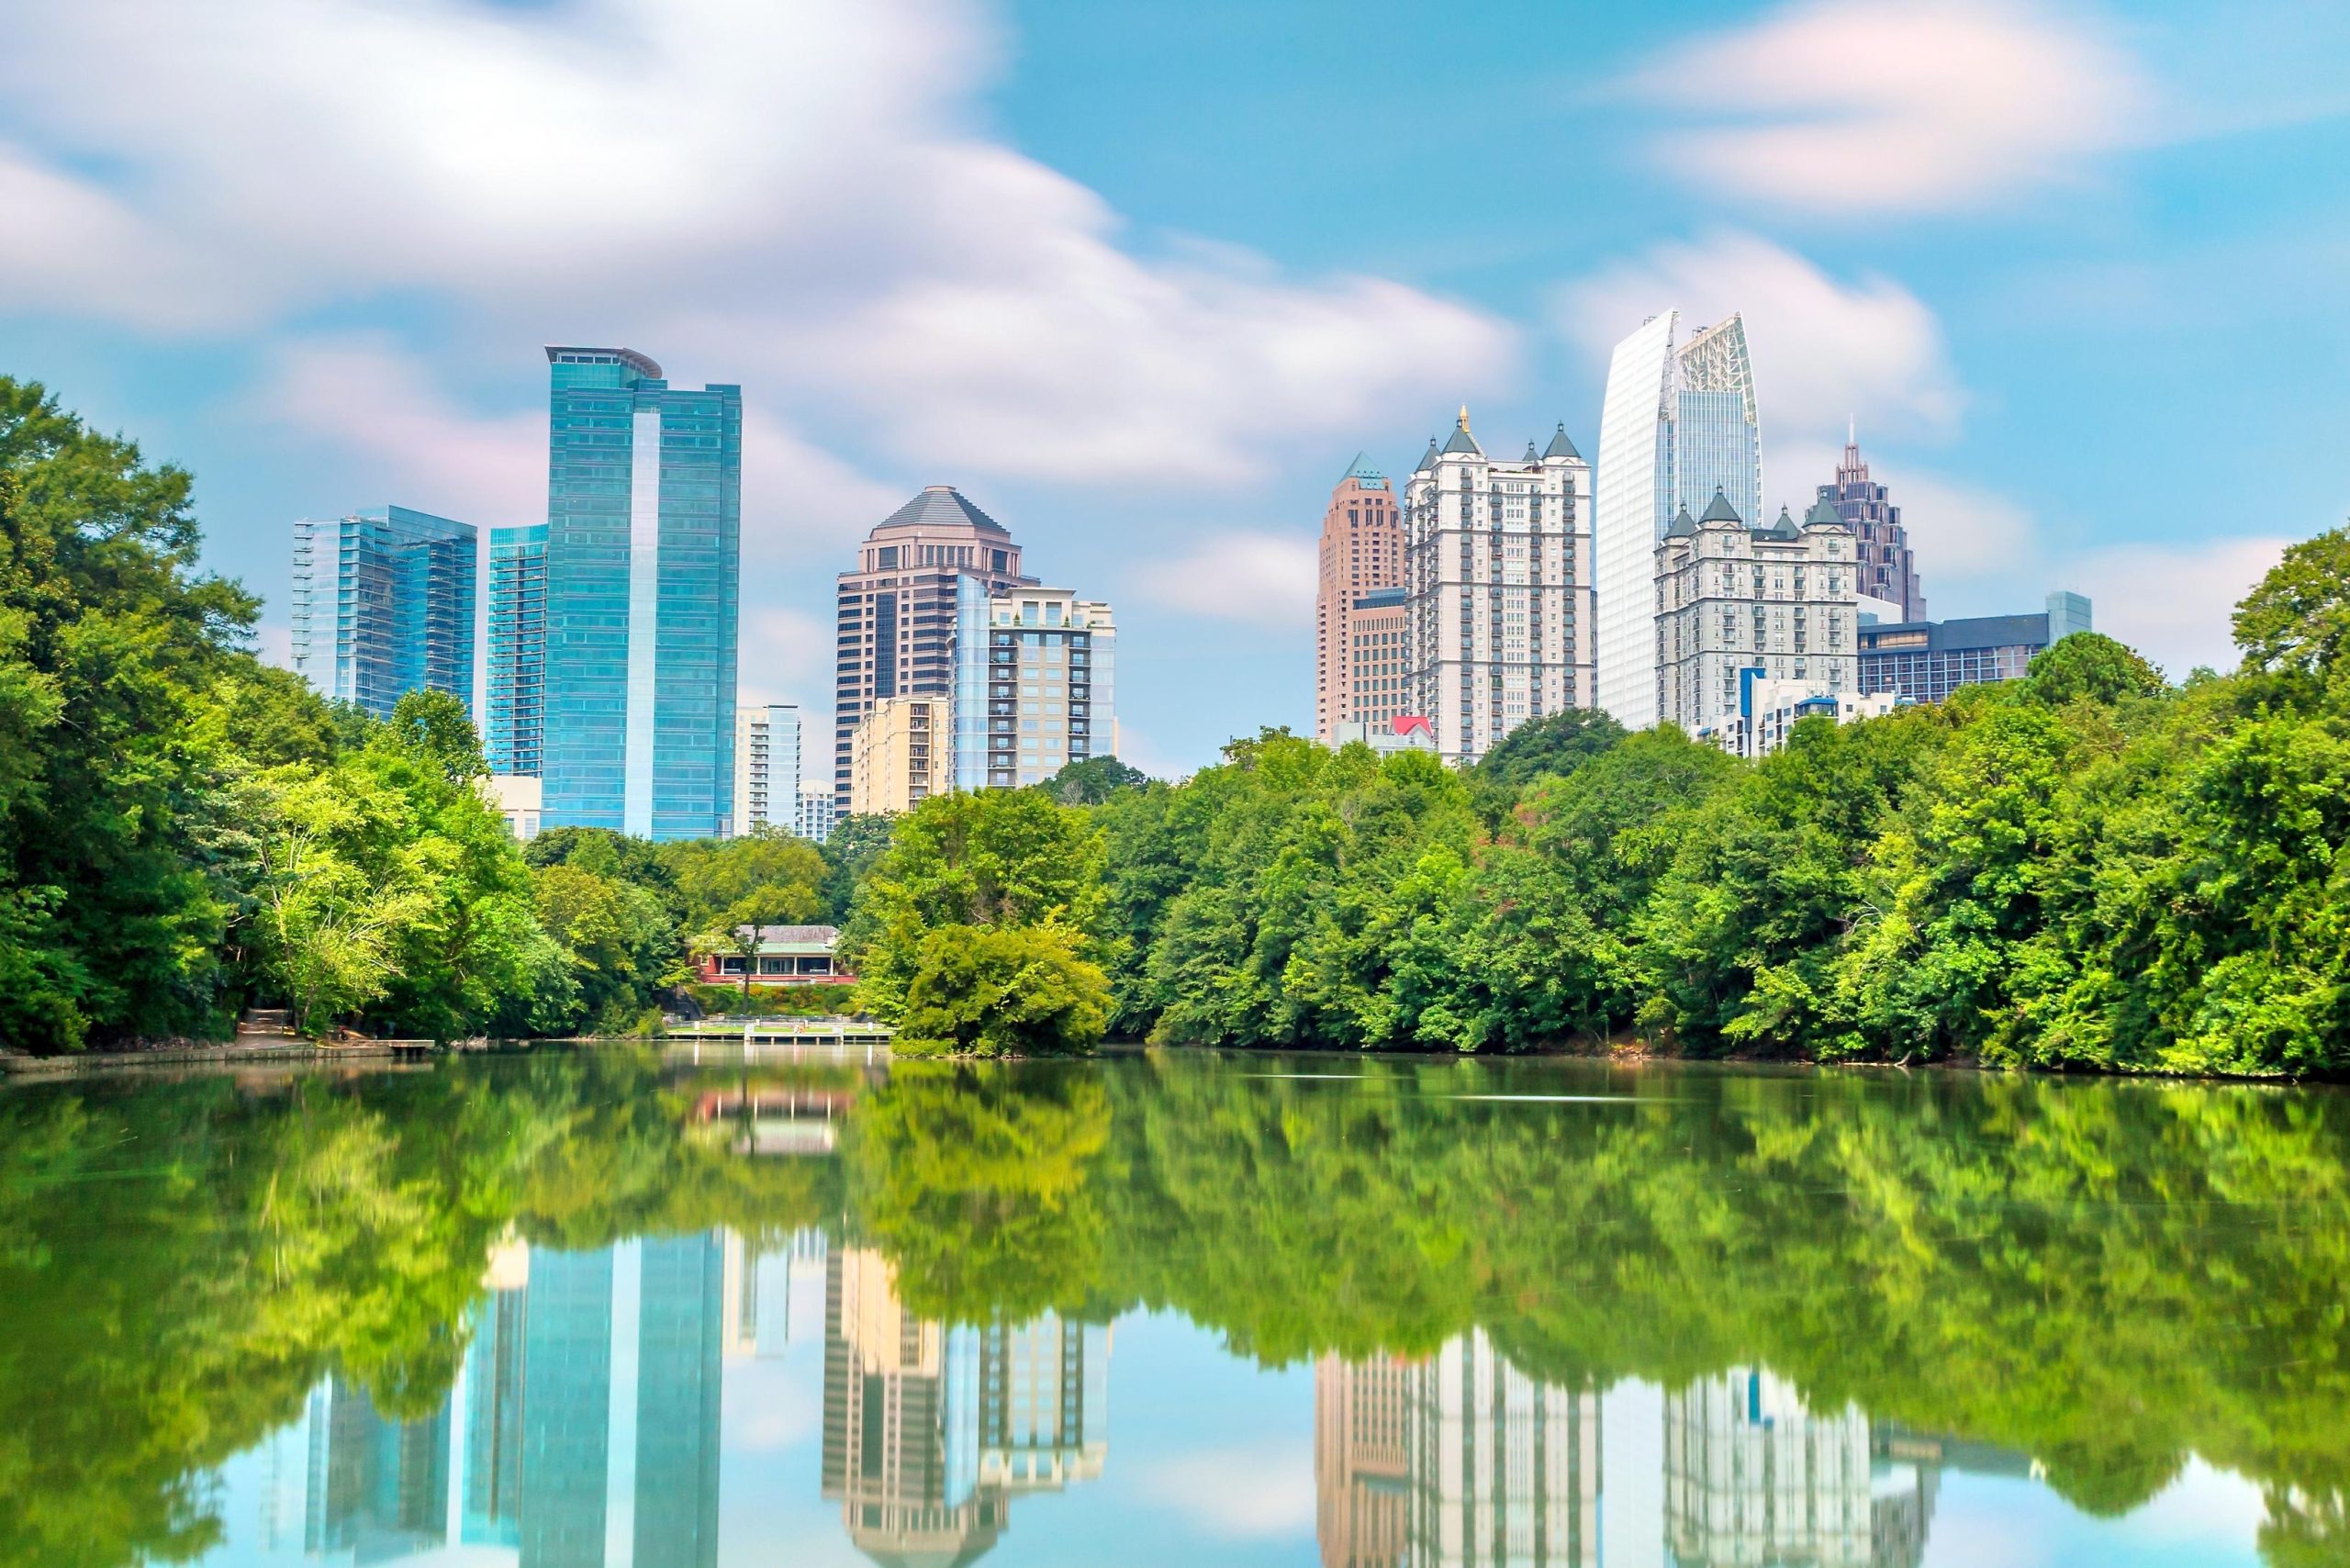 The Best Parks in Atlanta 2022